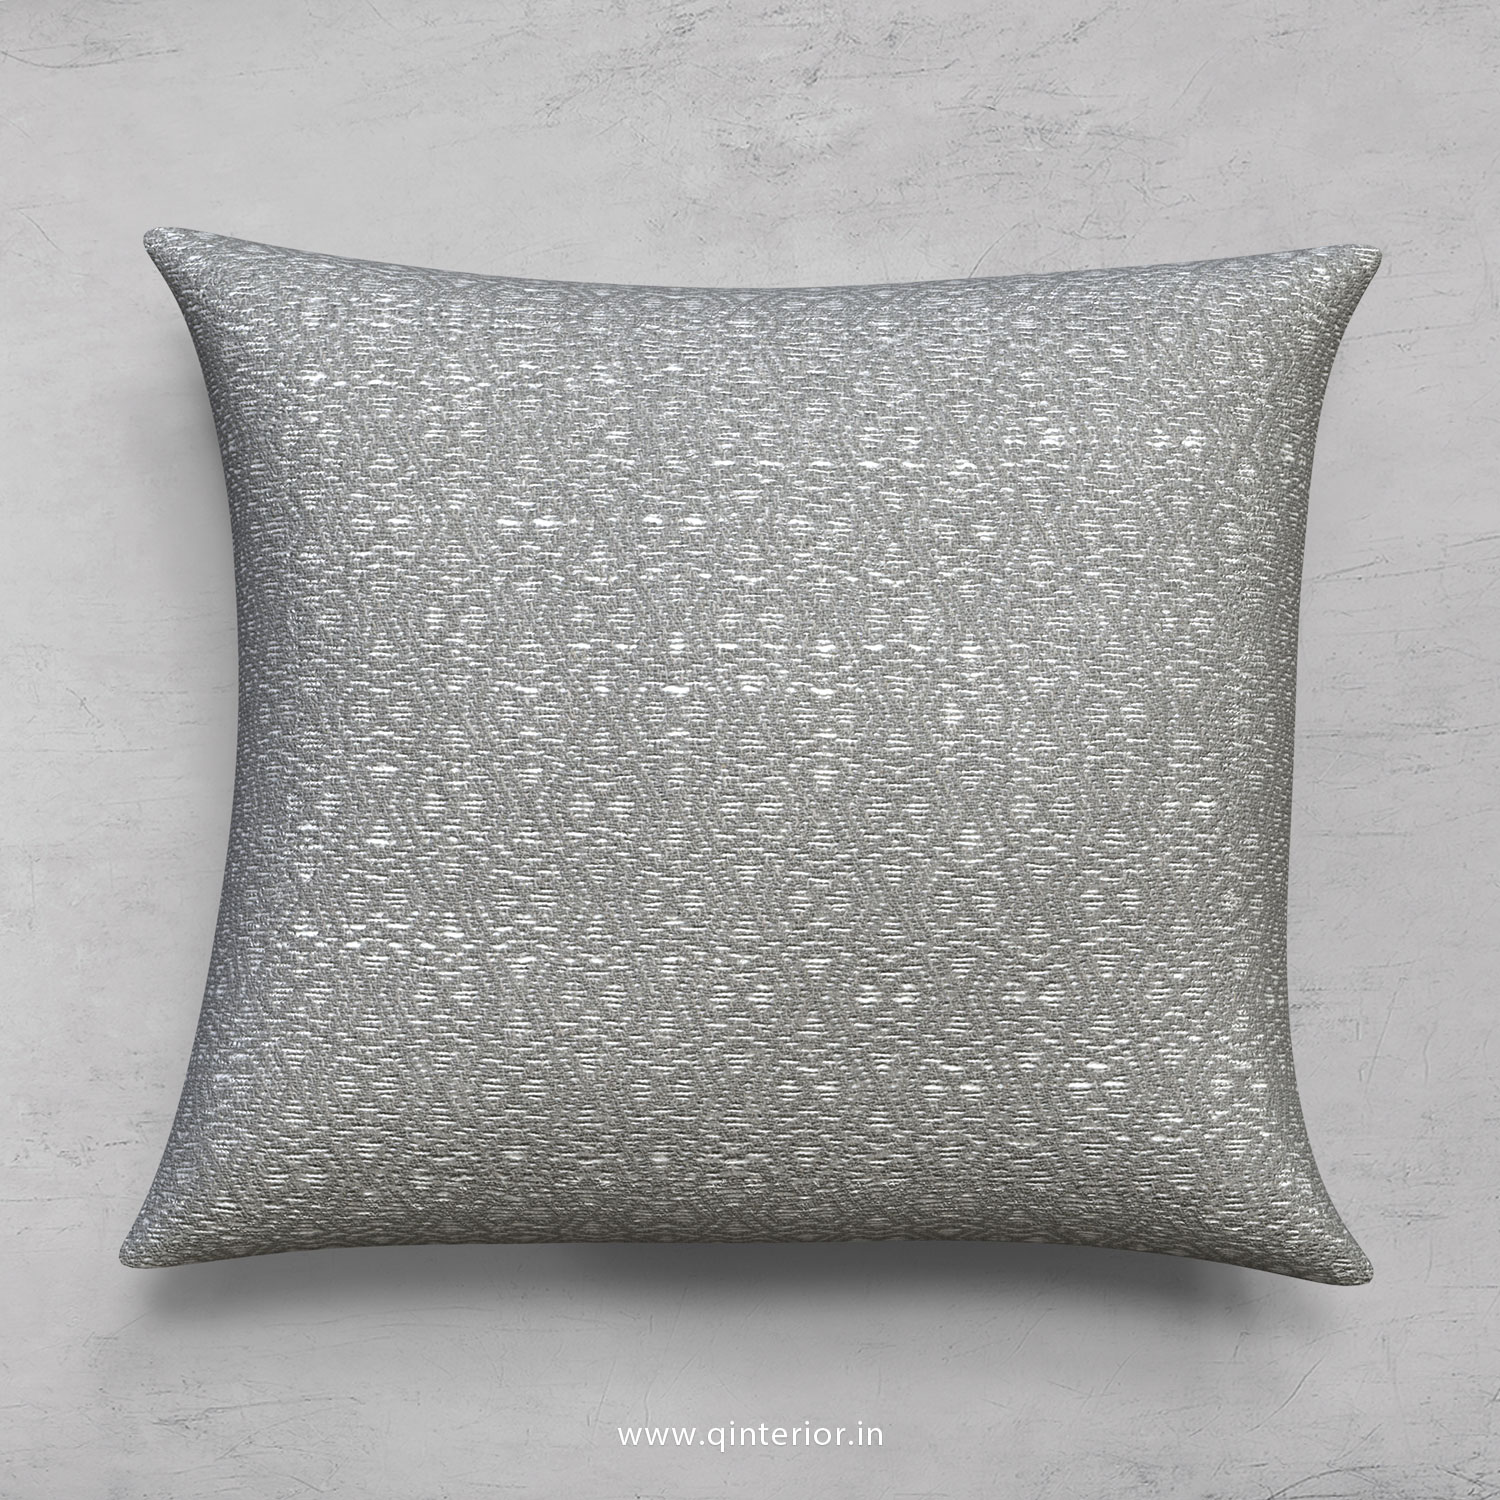 Cushion With Cushion Cover in Jacquard- CUS001 JQ39